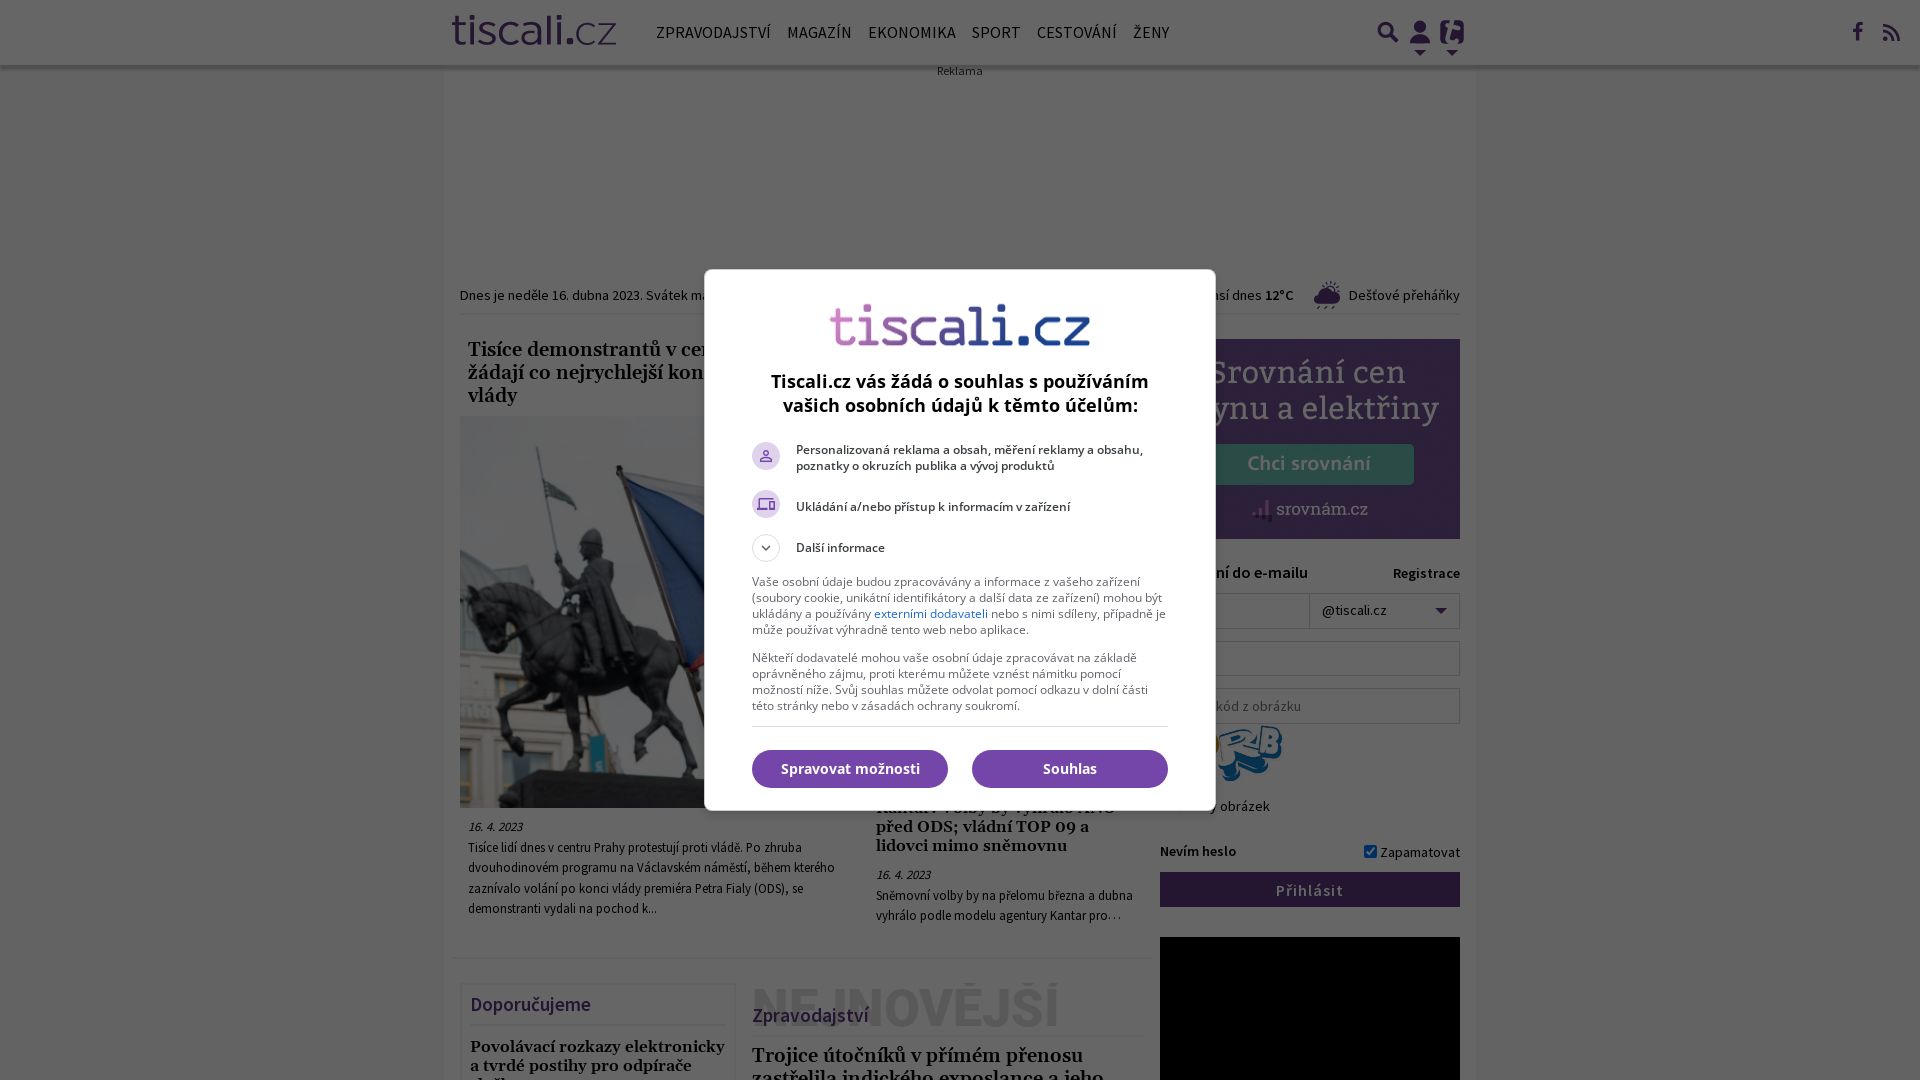 网站状态 tiscali.cz 是  在线的